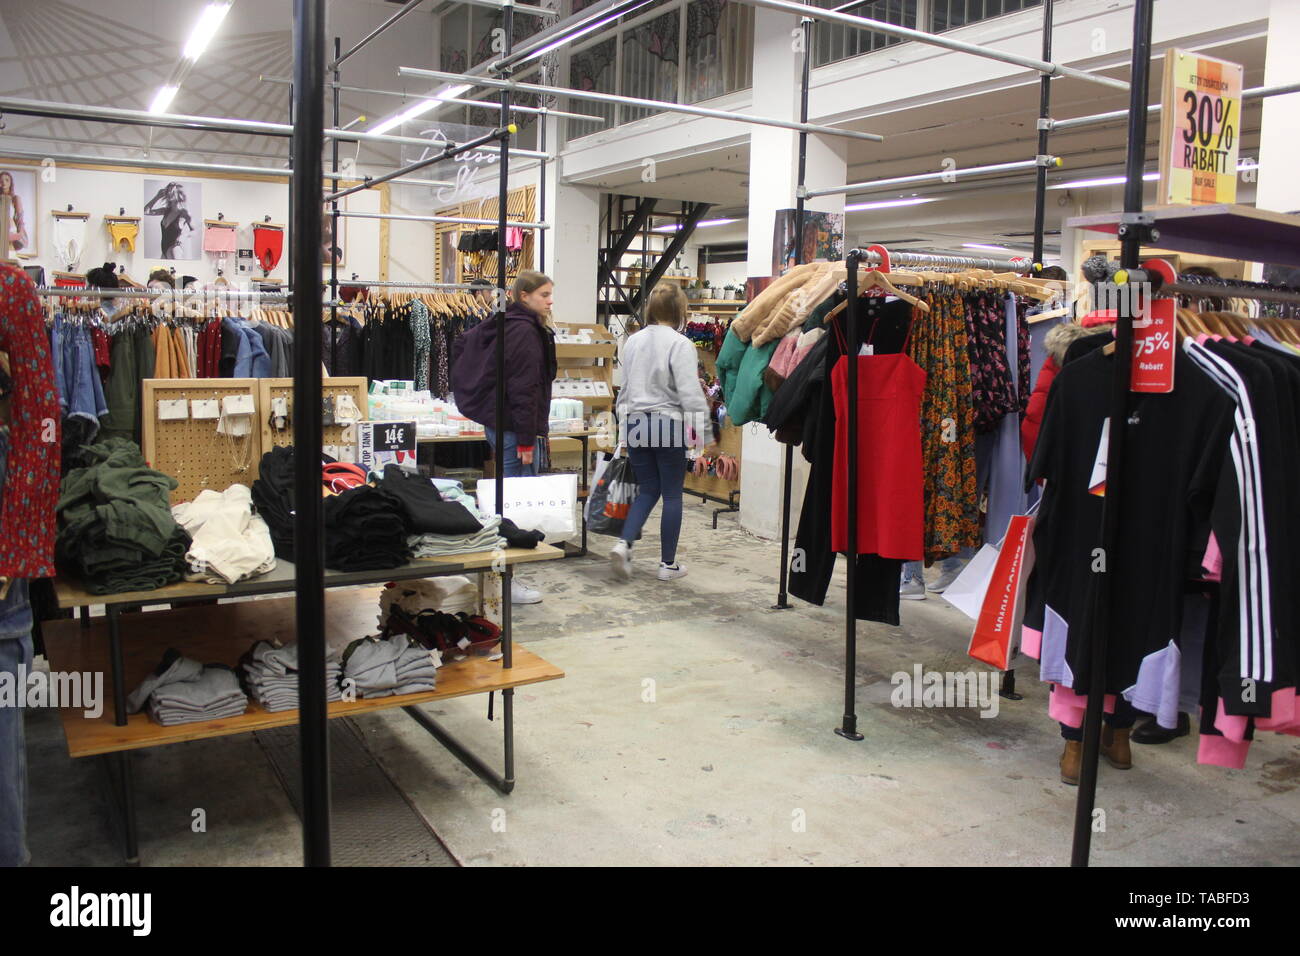 Innenraum der Pop-up Stores Urban Outfitters. Shop Interior mit textilen Produkten und cosumers eilt über die Prüfung von Preisnachlässen.. Stockfoto